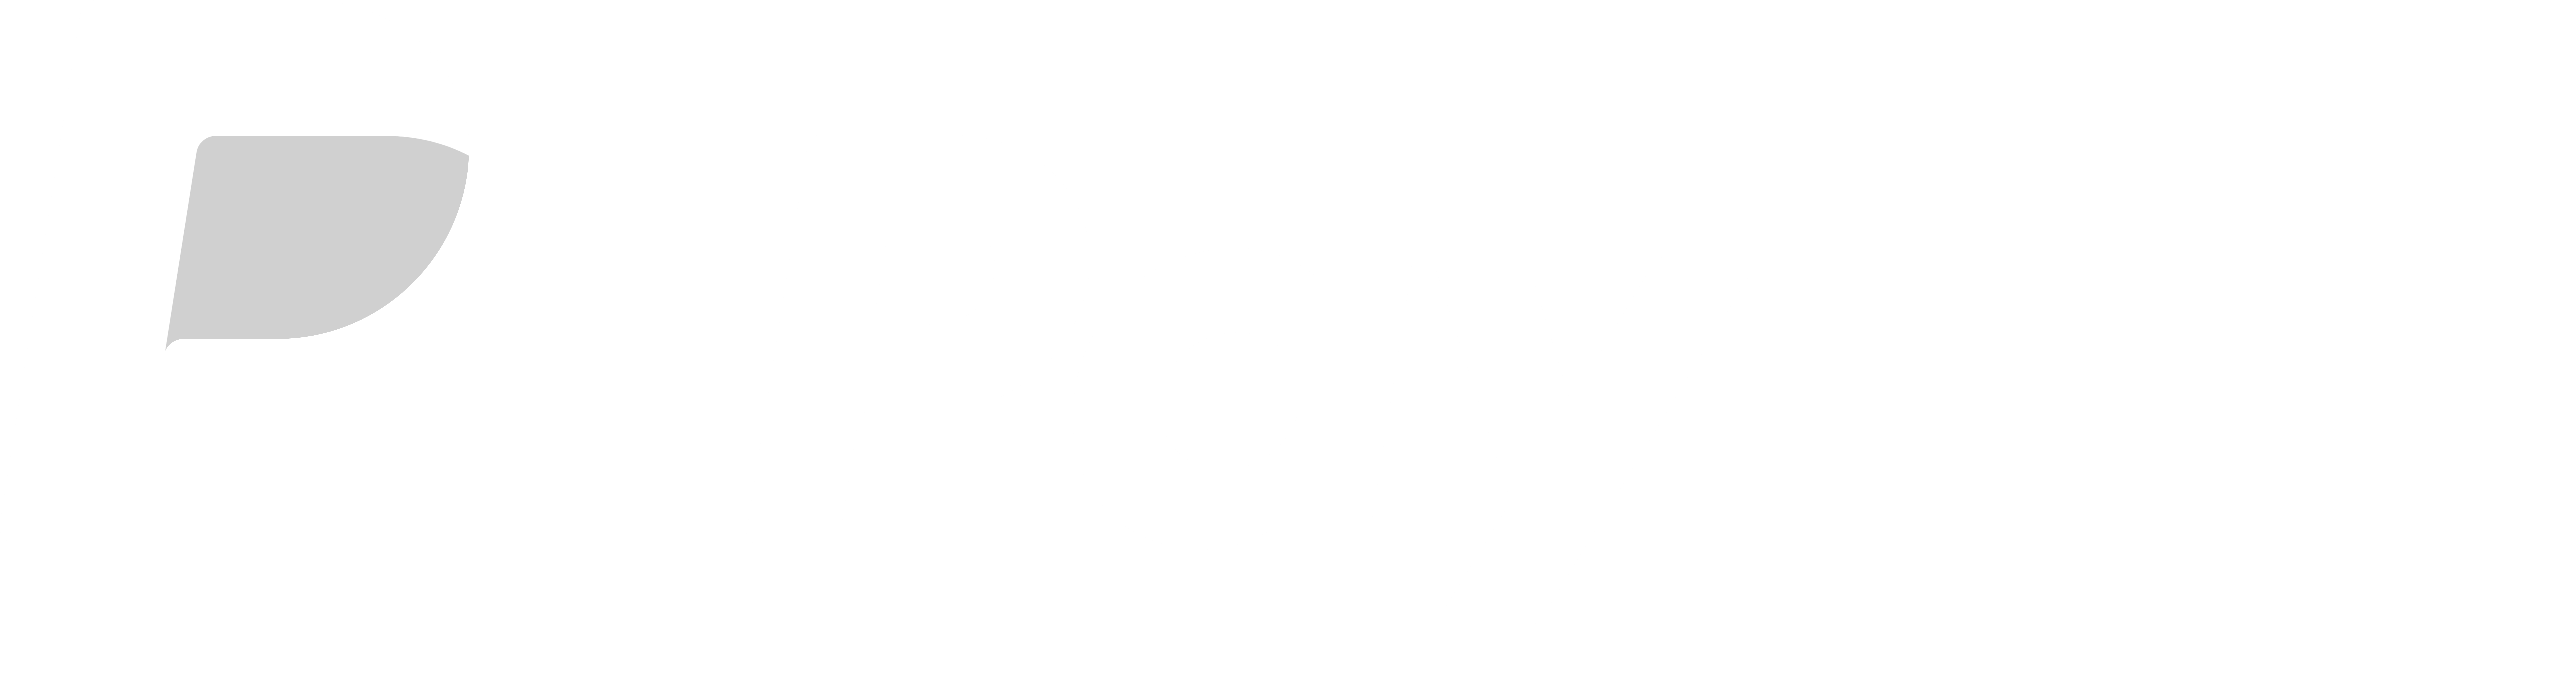 paypal-white